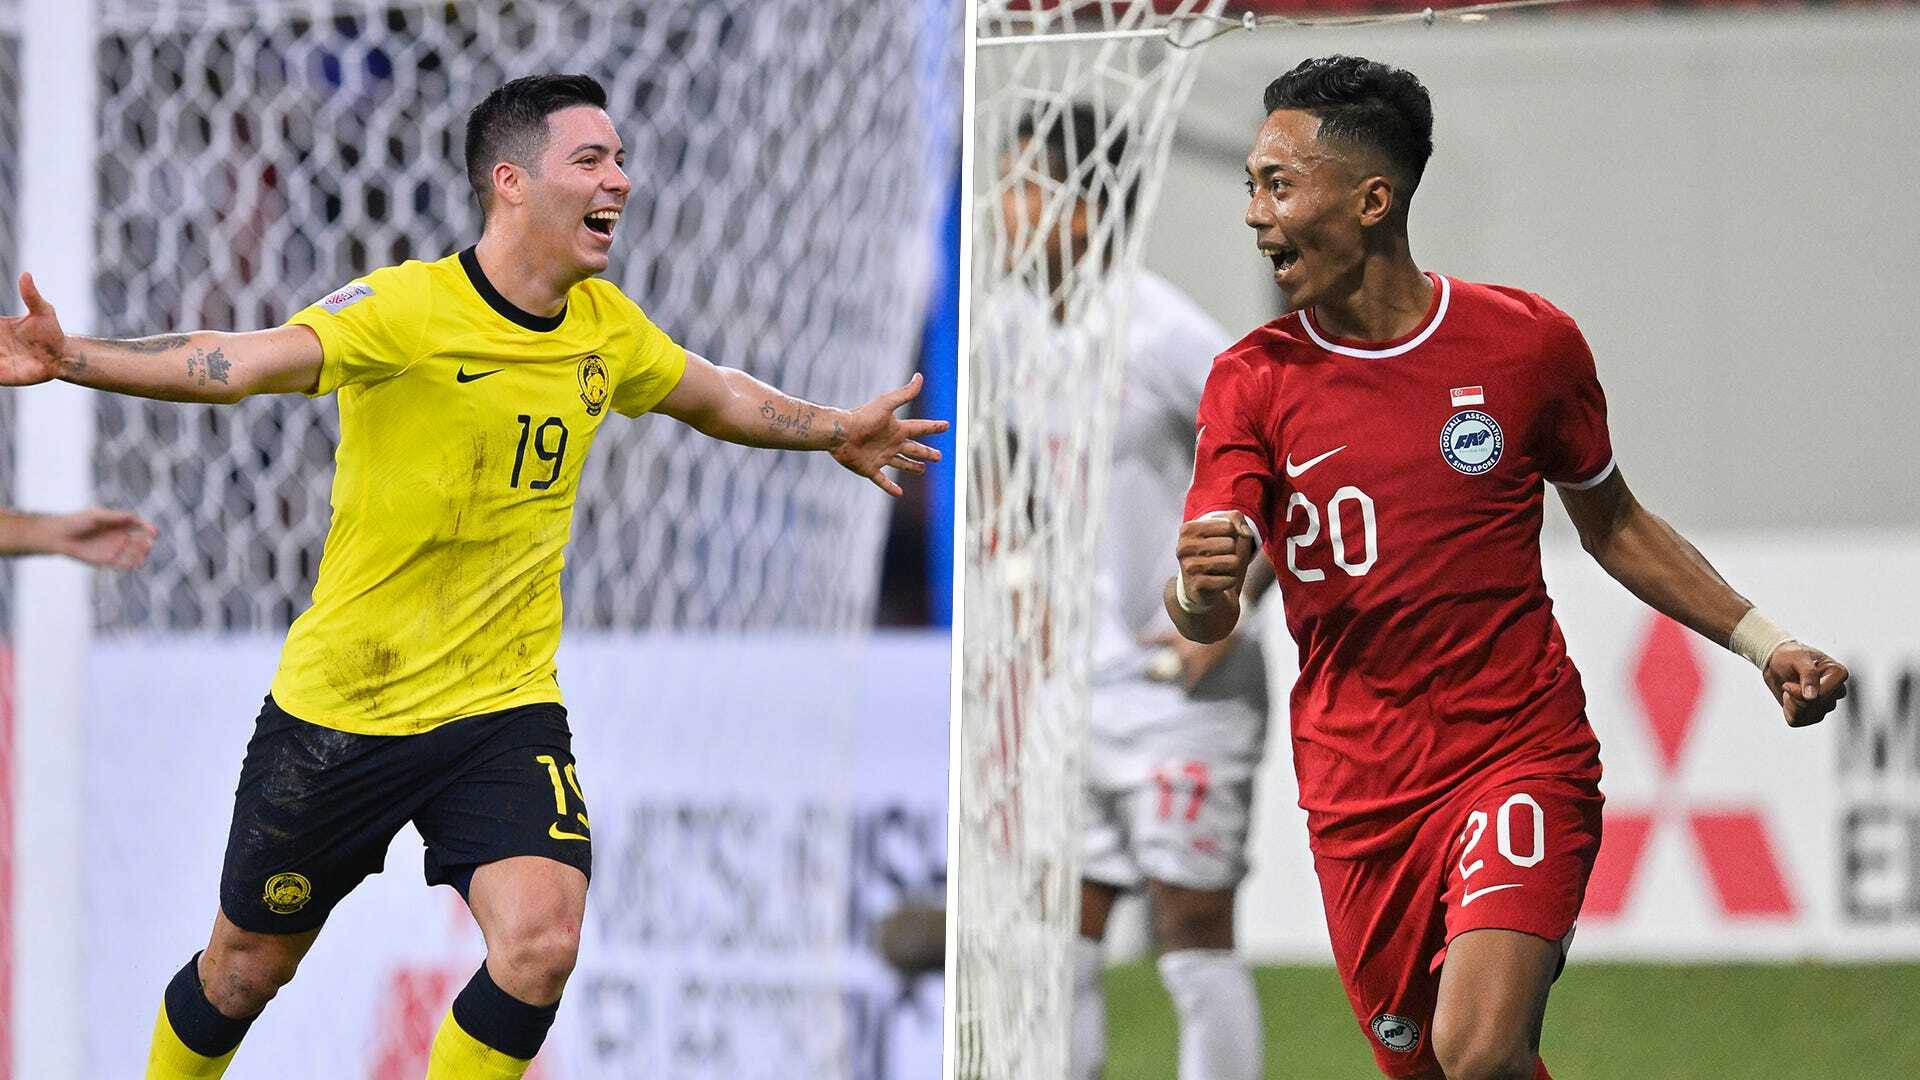 Lịch sử đối đầu Singapore và Malaysia cho thấy Singapore và Malaysia đã gặp nhau rất nhiều tại các giải đấu bóng lớn